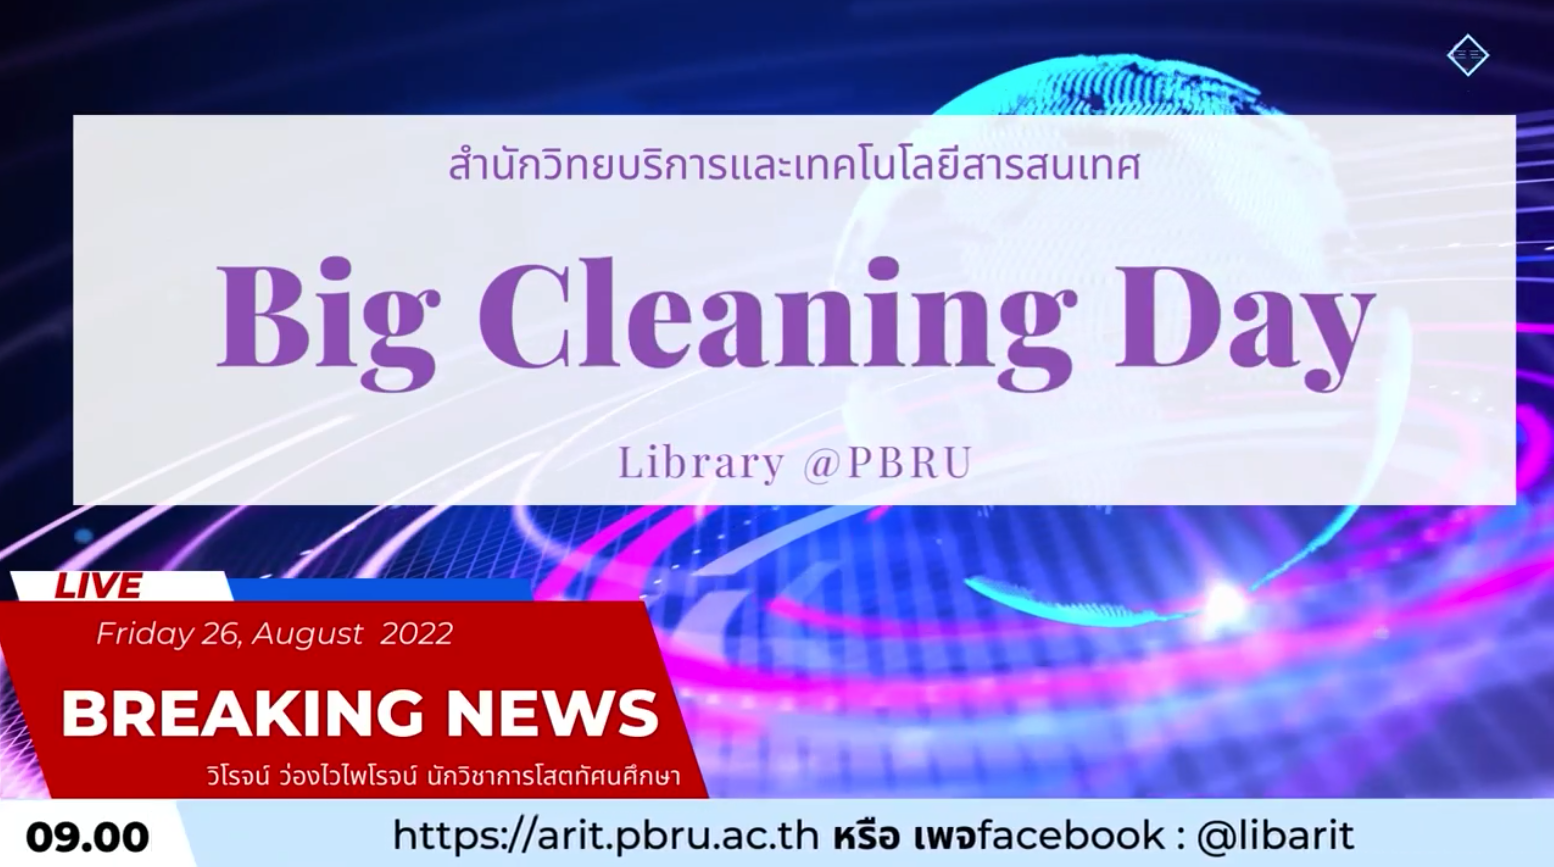 ผู้บริหารและบุคลากร สำนักวิทยบริการและเทคโนโลยีสารสนเทศ มหาวิทยาลัยราชภัฏเพชรบุรี ร่วมจัดกิจกรรม Big Cleaning Day